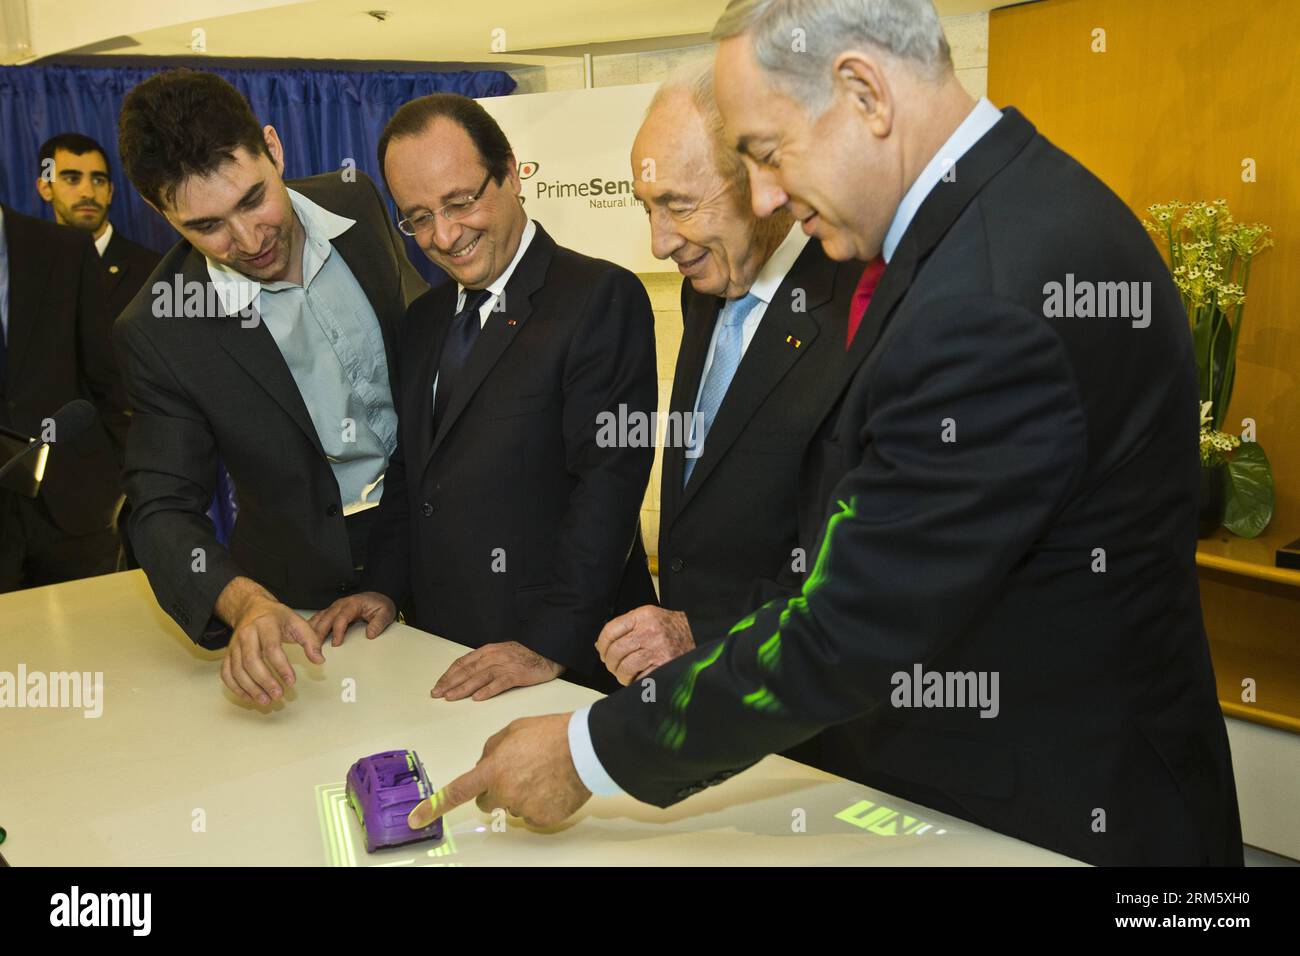 Bildnummer : 60732594 Datum : 19.11.2013 Copyright : imago/Xinhua (131119) -- TEL AVIV, 19 novembre 2013 (Xinhua) -- le président français François Hollande (2e L), le Premier ministre israélien Benjamin Netanyahu (1e R) et le président Shimon Peres (2e R) assistent à l’inauguration de la Journée de l’innovation dans un hôtel de tel Aviv, Israël, le 19 novembre 2013. Hollande a conclu un voyage de trois jours en Israël et en Palestine en participant à un sommet franco-israélien sur l’innovation technologique et en rencontrant des membres de la communauté française. (Xinhua/Pool/Jack Guez) ISRAEL-TEL AVIV-INNOVATION SUMMIT-FRANCE-FRANCOIS HOLLANDE PUBLICATIONxNOTx Banque D'Images